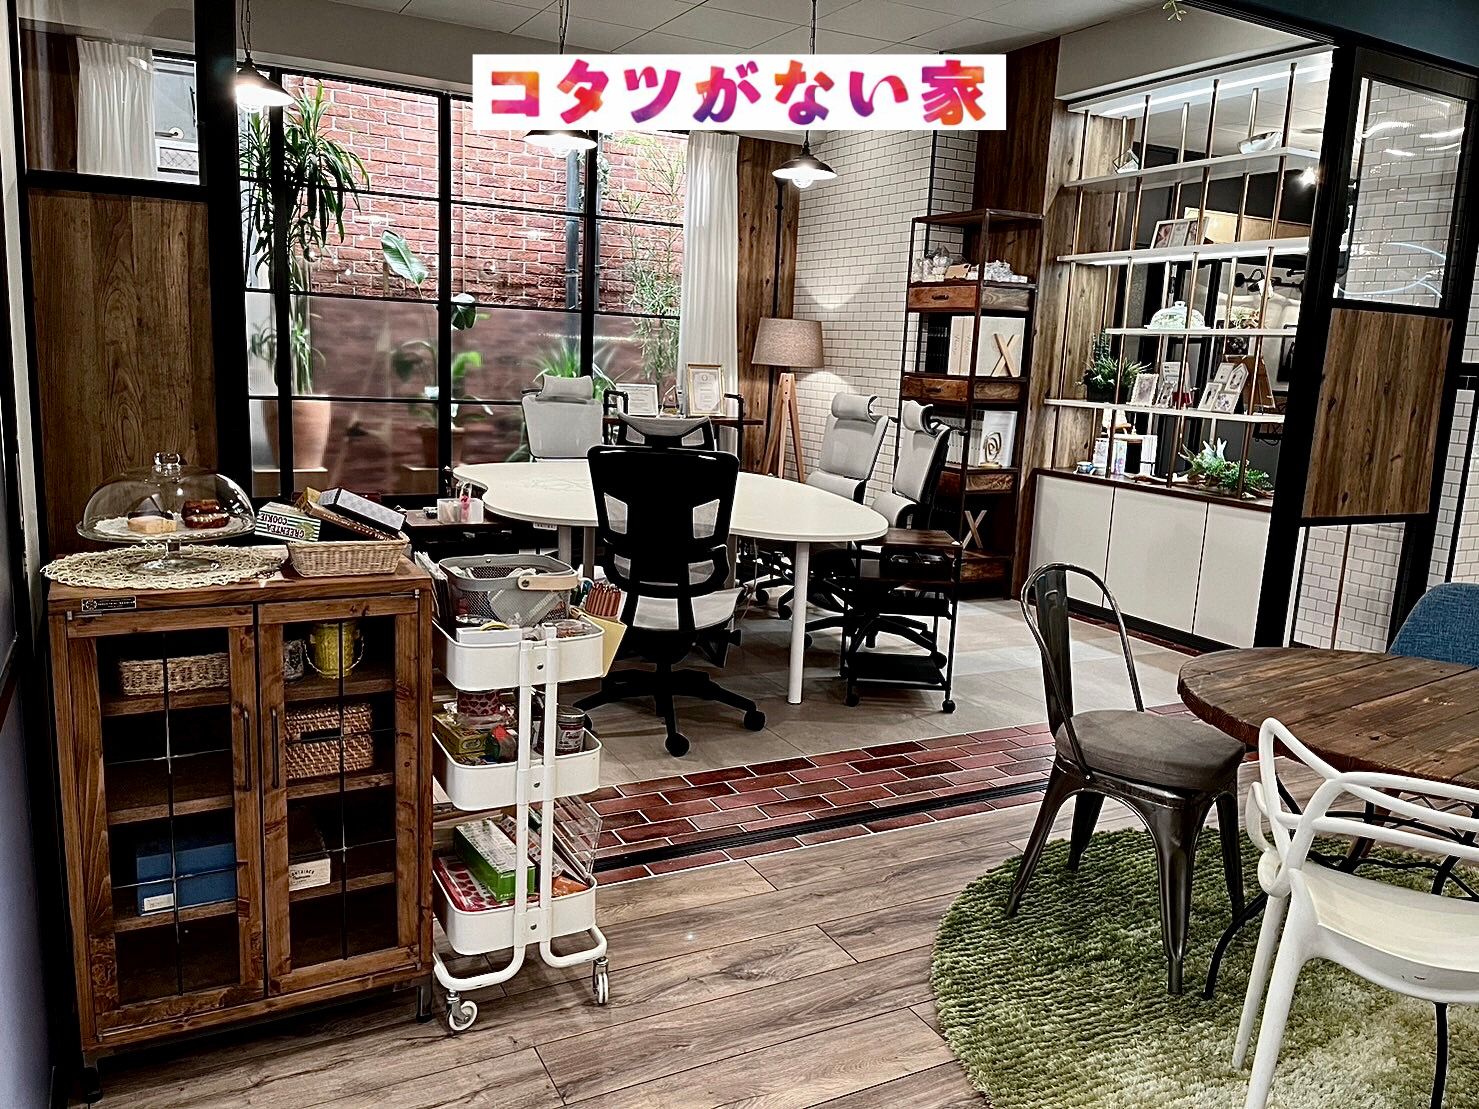 大阪のおしゃれな家具屋 オーダー家具・アイアン家具ならINDUSTRIAL BRANCH コタツがない家